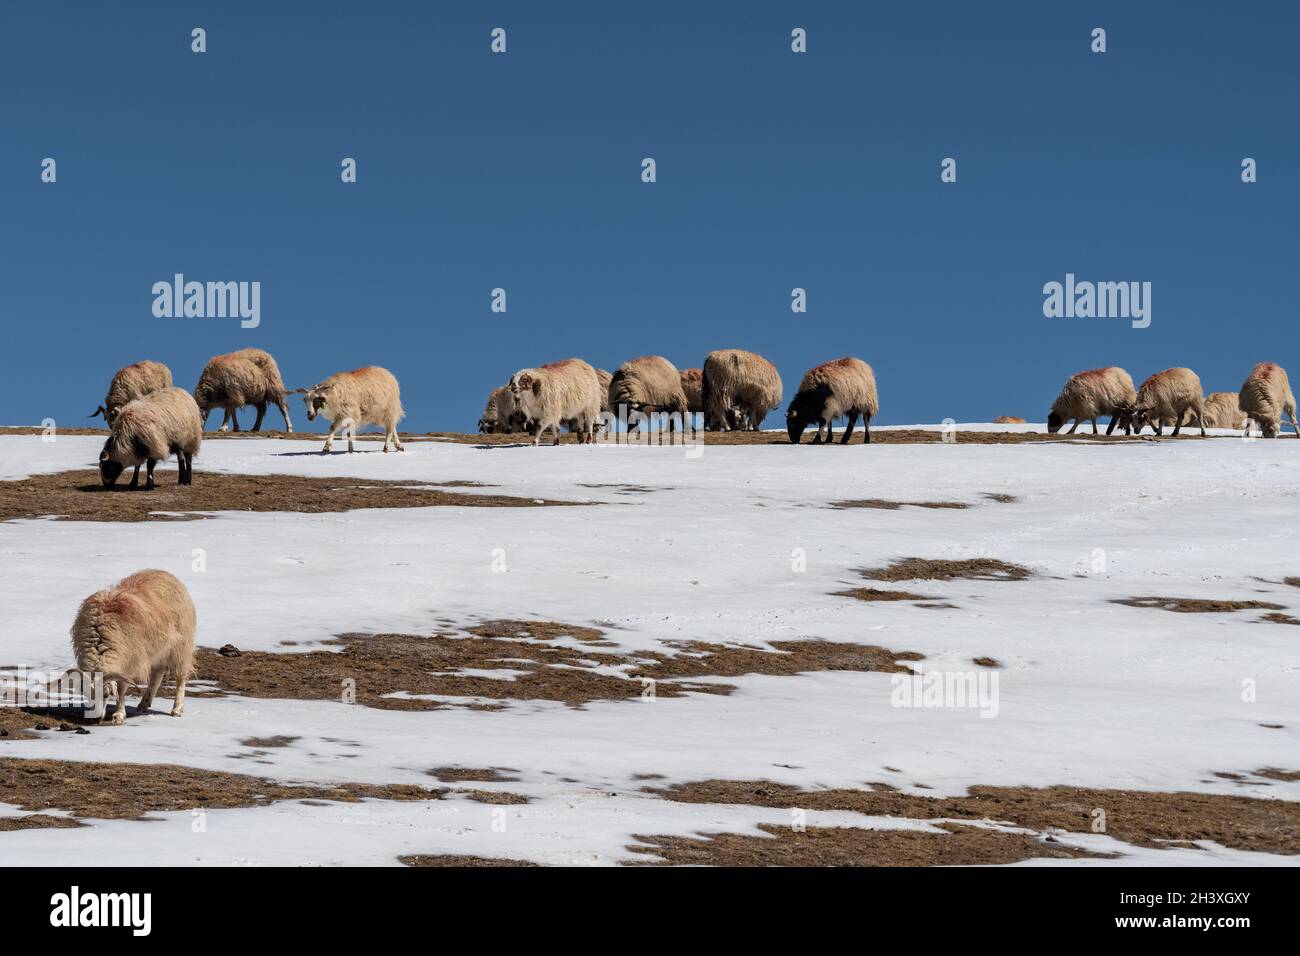 Les moutons affluent sur une colline enneigée Banque D'Images